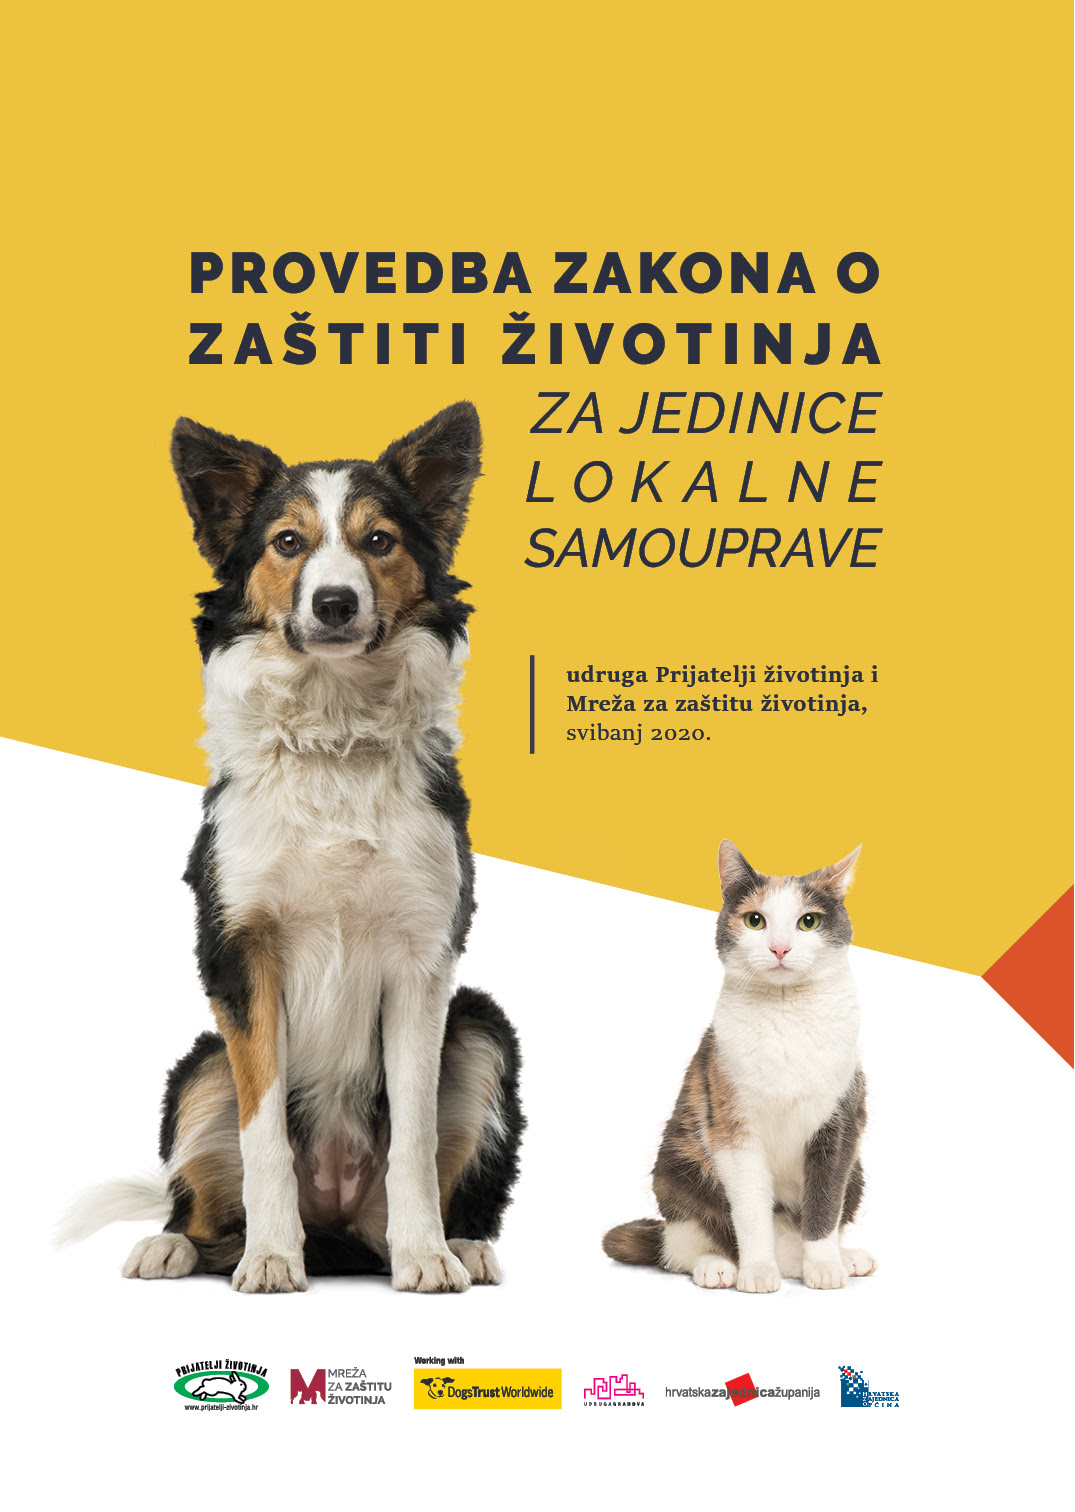 Sve o provedbi Zakona o zaštiti životinja na jednome mjestu | Prijatelji životinja i Mreža za zaštitu životinja objavili korisnu brošuru za lokalne zajednice